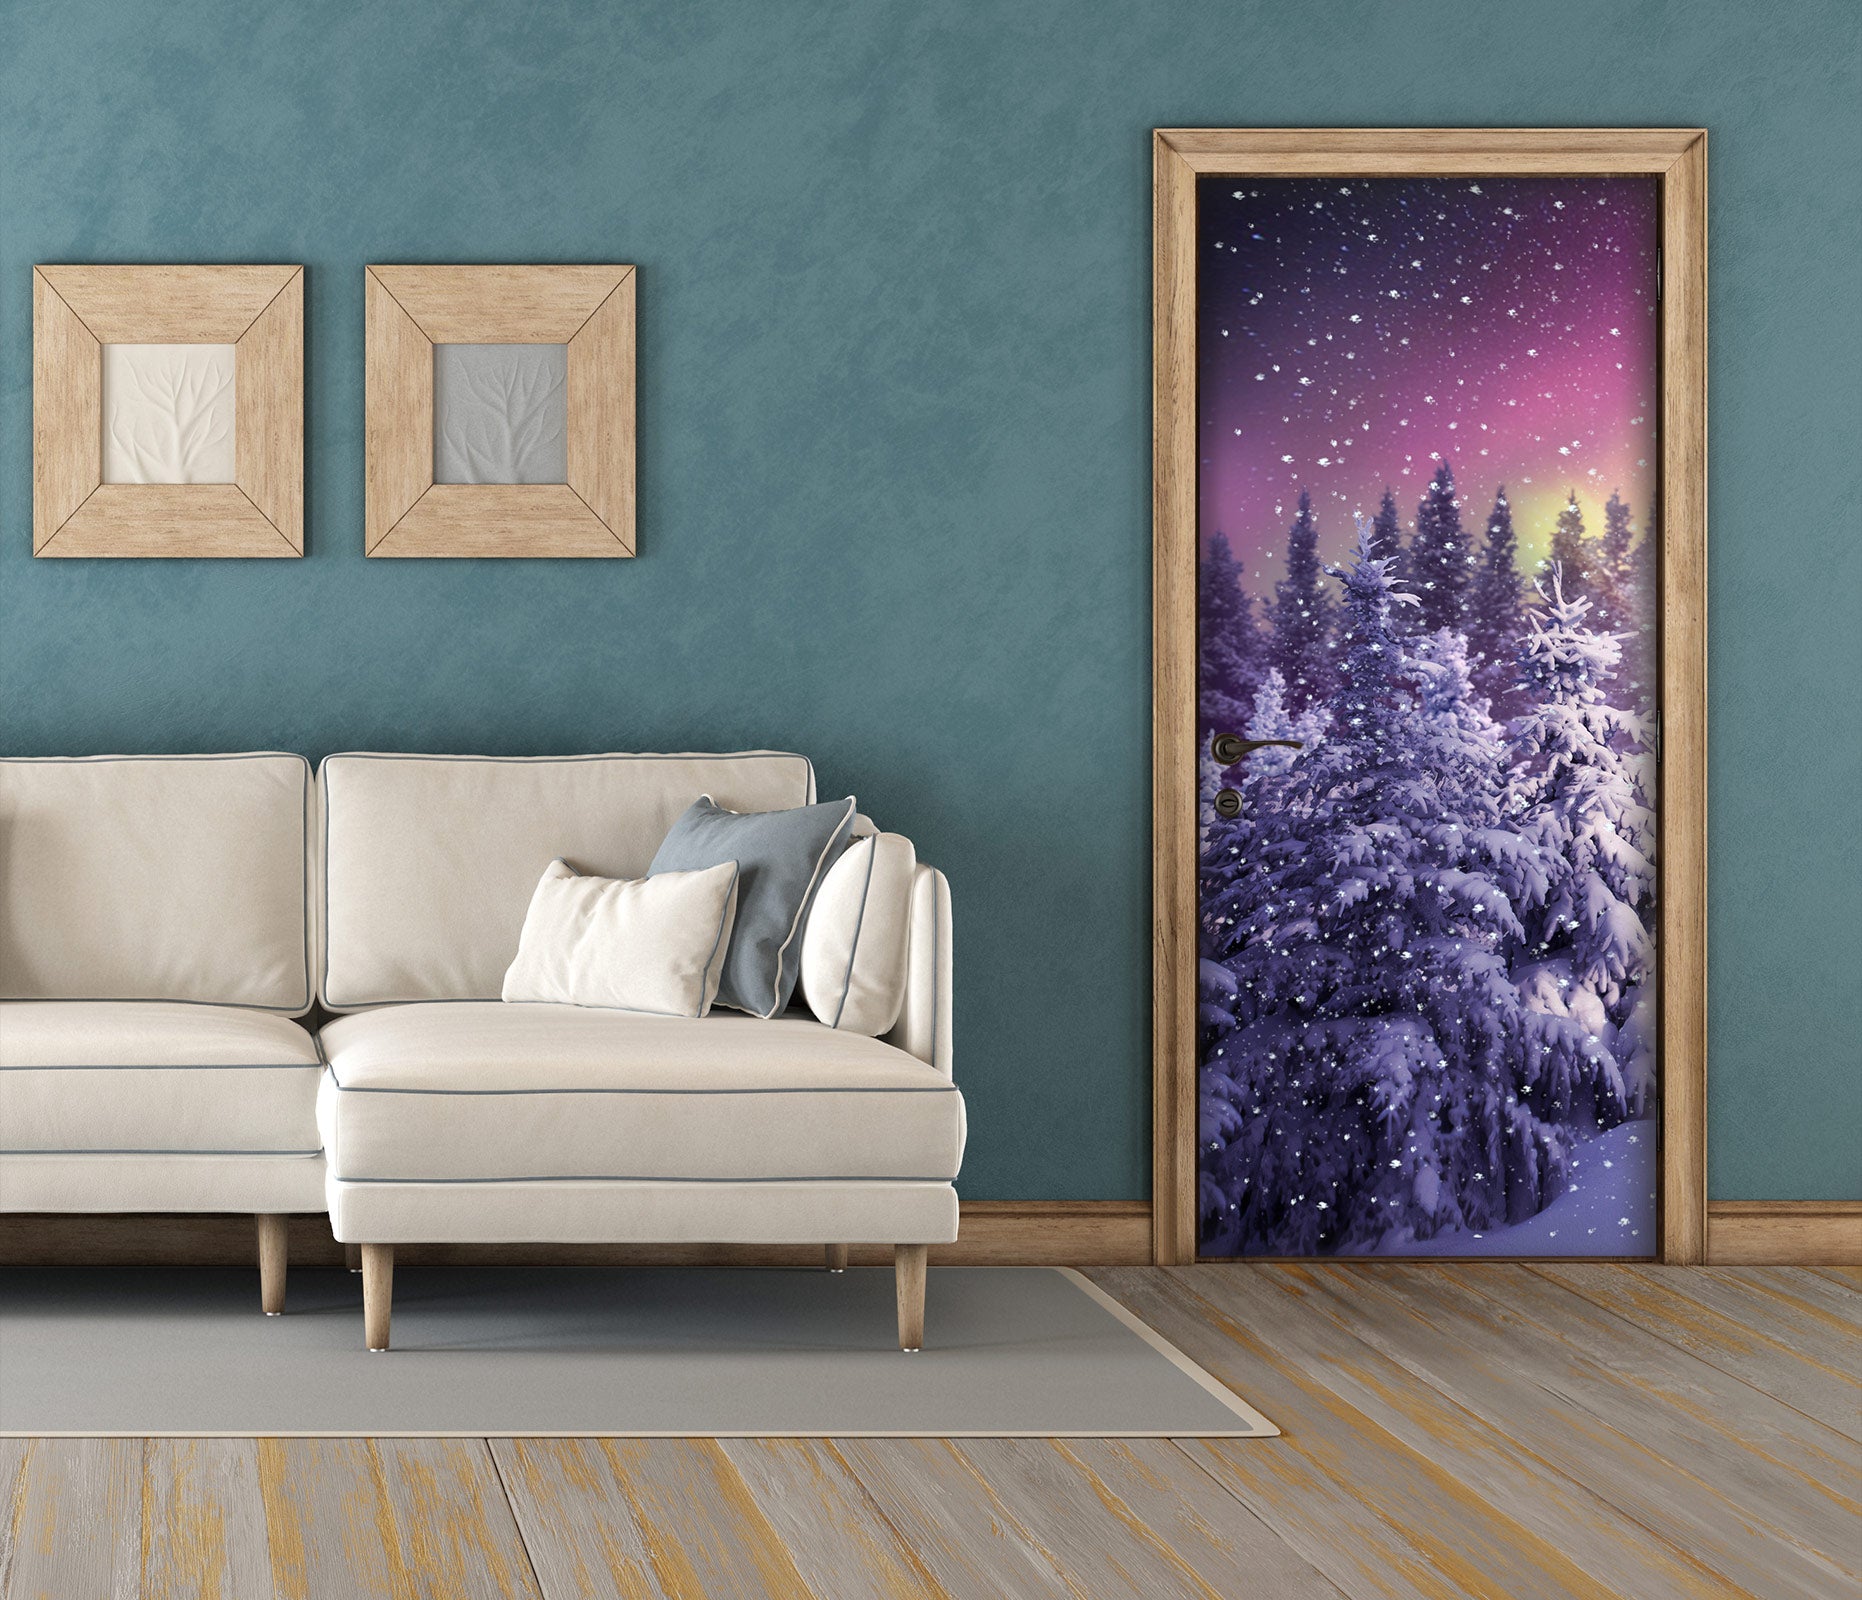 3D Snowy Woods 112151 Jerry LoFaro Door Mural